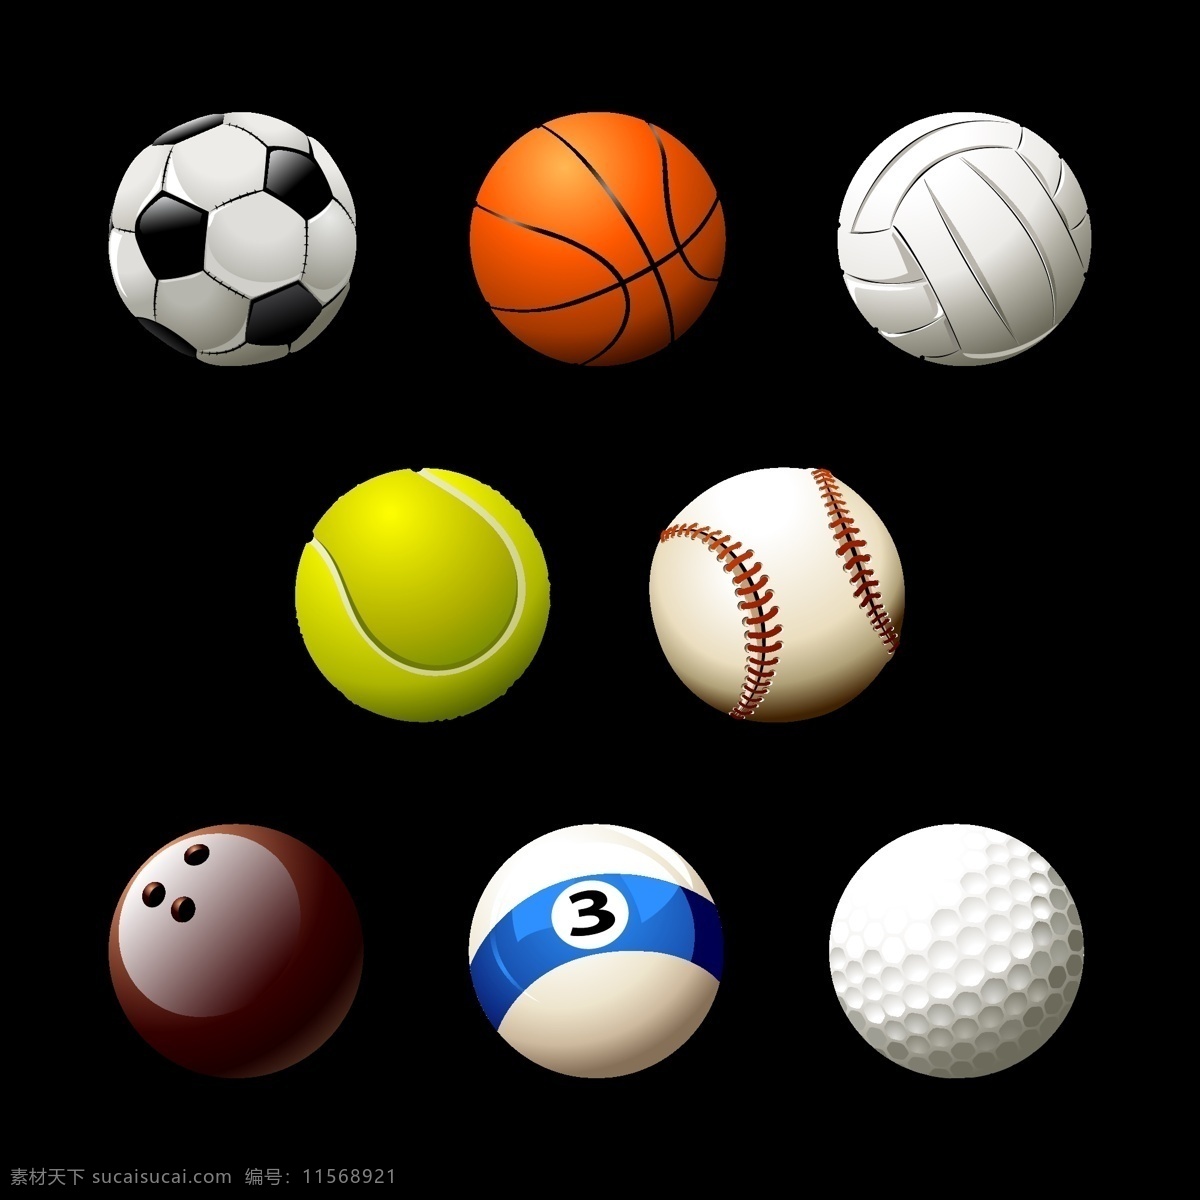 矢量 运动 球类 收藏 篮球 足球 台球 高尔夫 网球 排球 保龄球 桌球 棒球